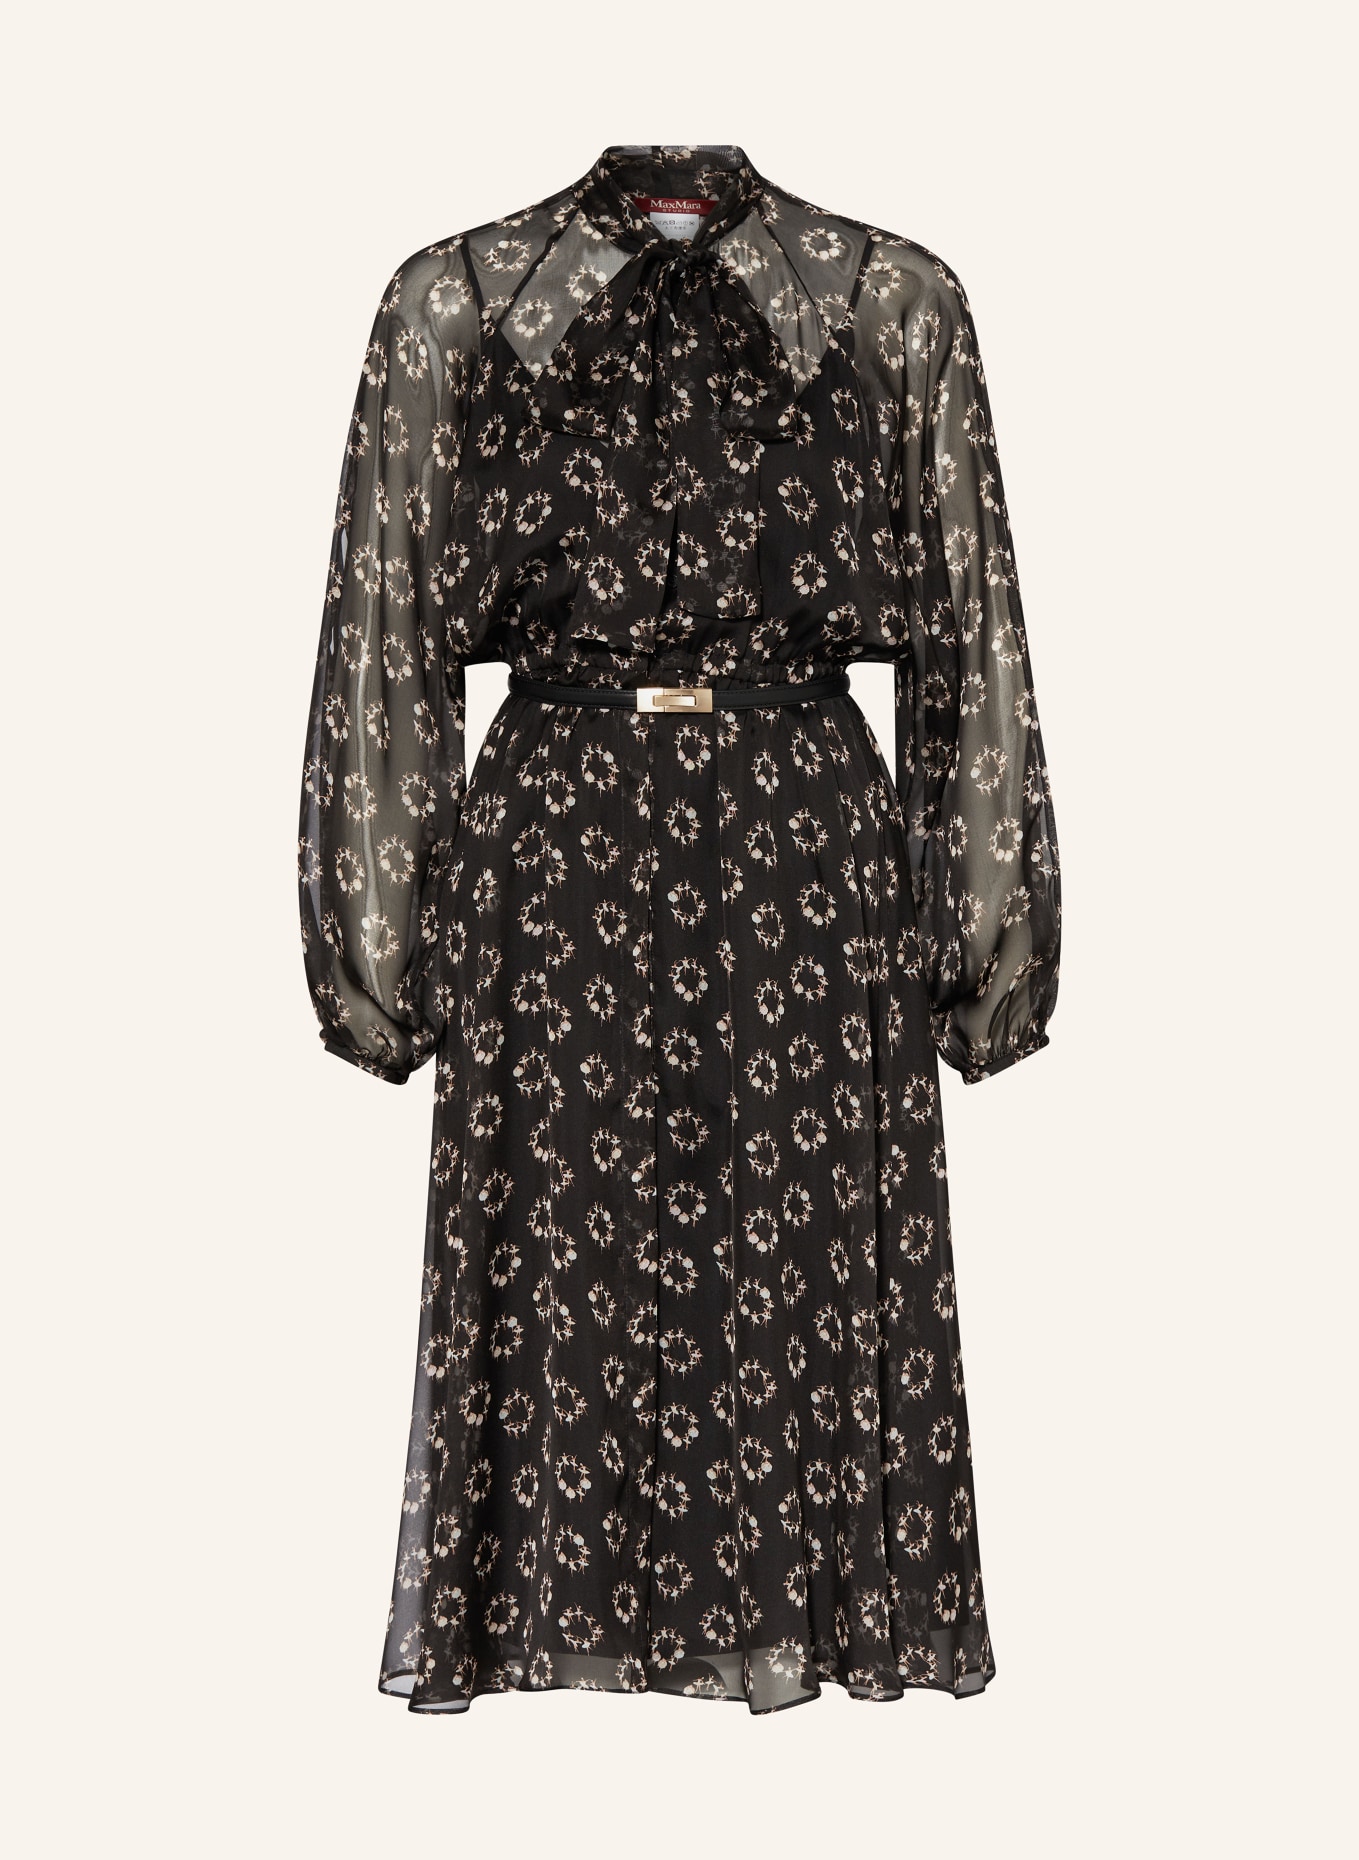 MaxMara STUDIO Shirt dress SONDRIO made of silk with bow, Color: BLACK/ LIGHT GRAY (Image 1)